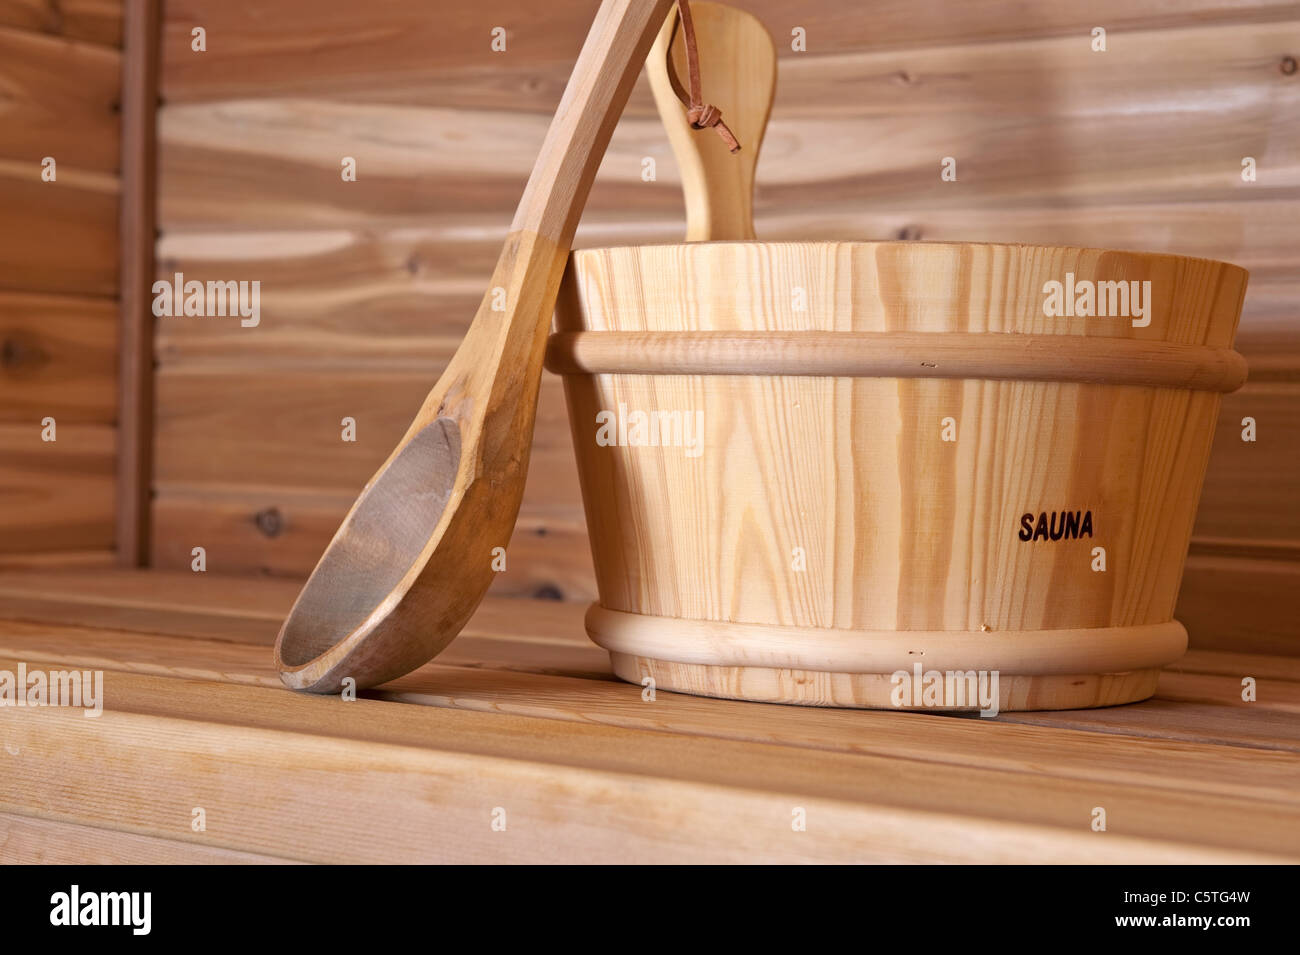 Cuchara de madera y la cuchara dentro de una sauna caliente Foto de stock